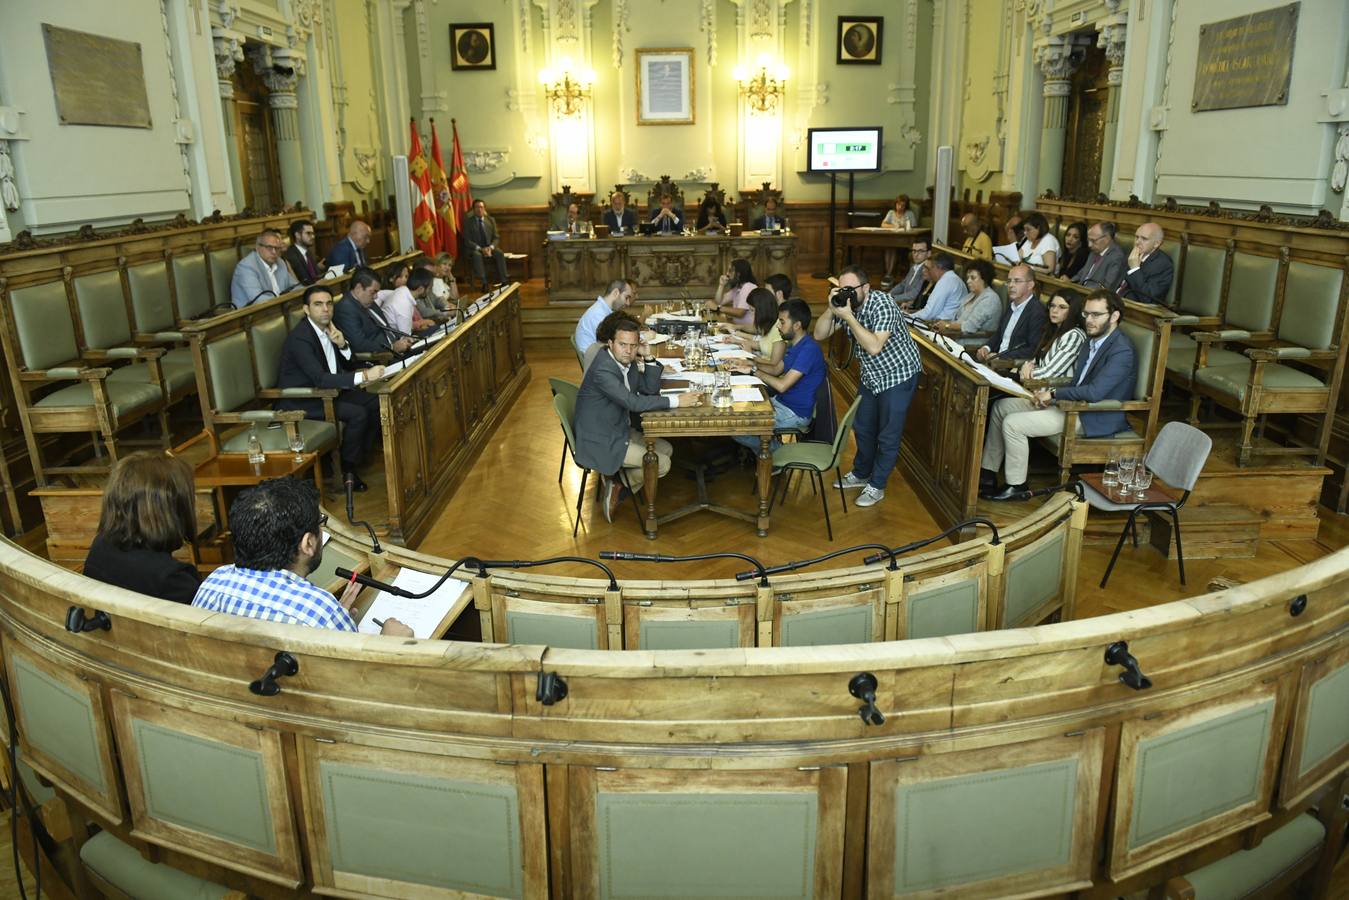 El primer Pleno ordinario del mandato 2019-2023 del Ayuntamiento de Valladolid comenzó con una moción breve, sin apenas discusión y apoyada por unanimidad. Apenas un par de reproches desde las bancadas de Ciudadanos y PP a la labor del equipo de Gobierno y una aprobación general a una propuesta de Vox.